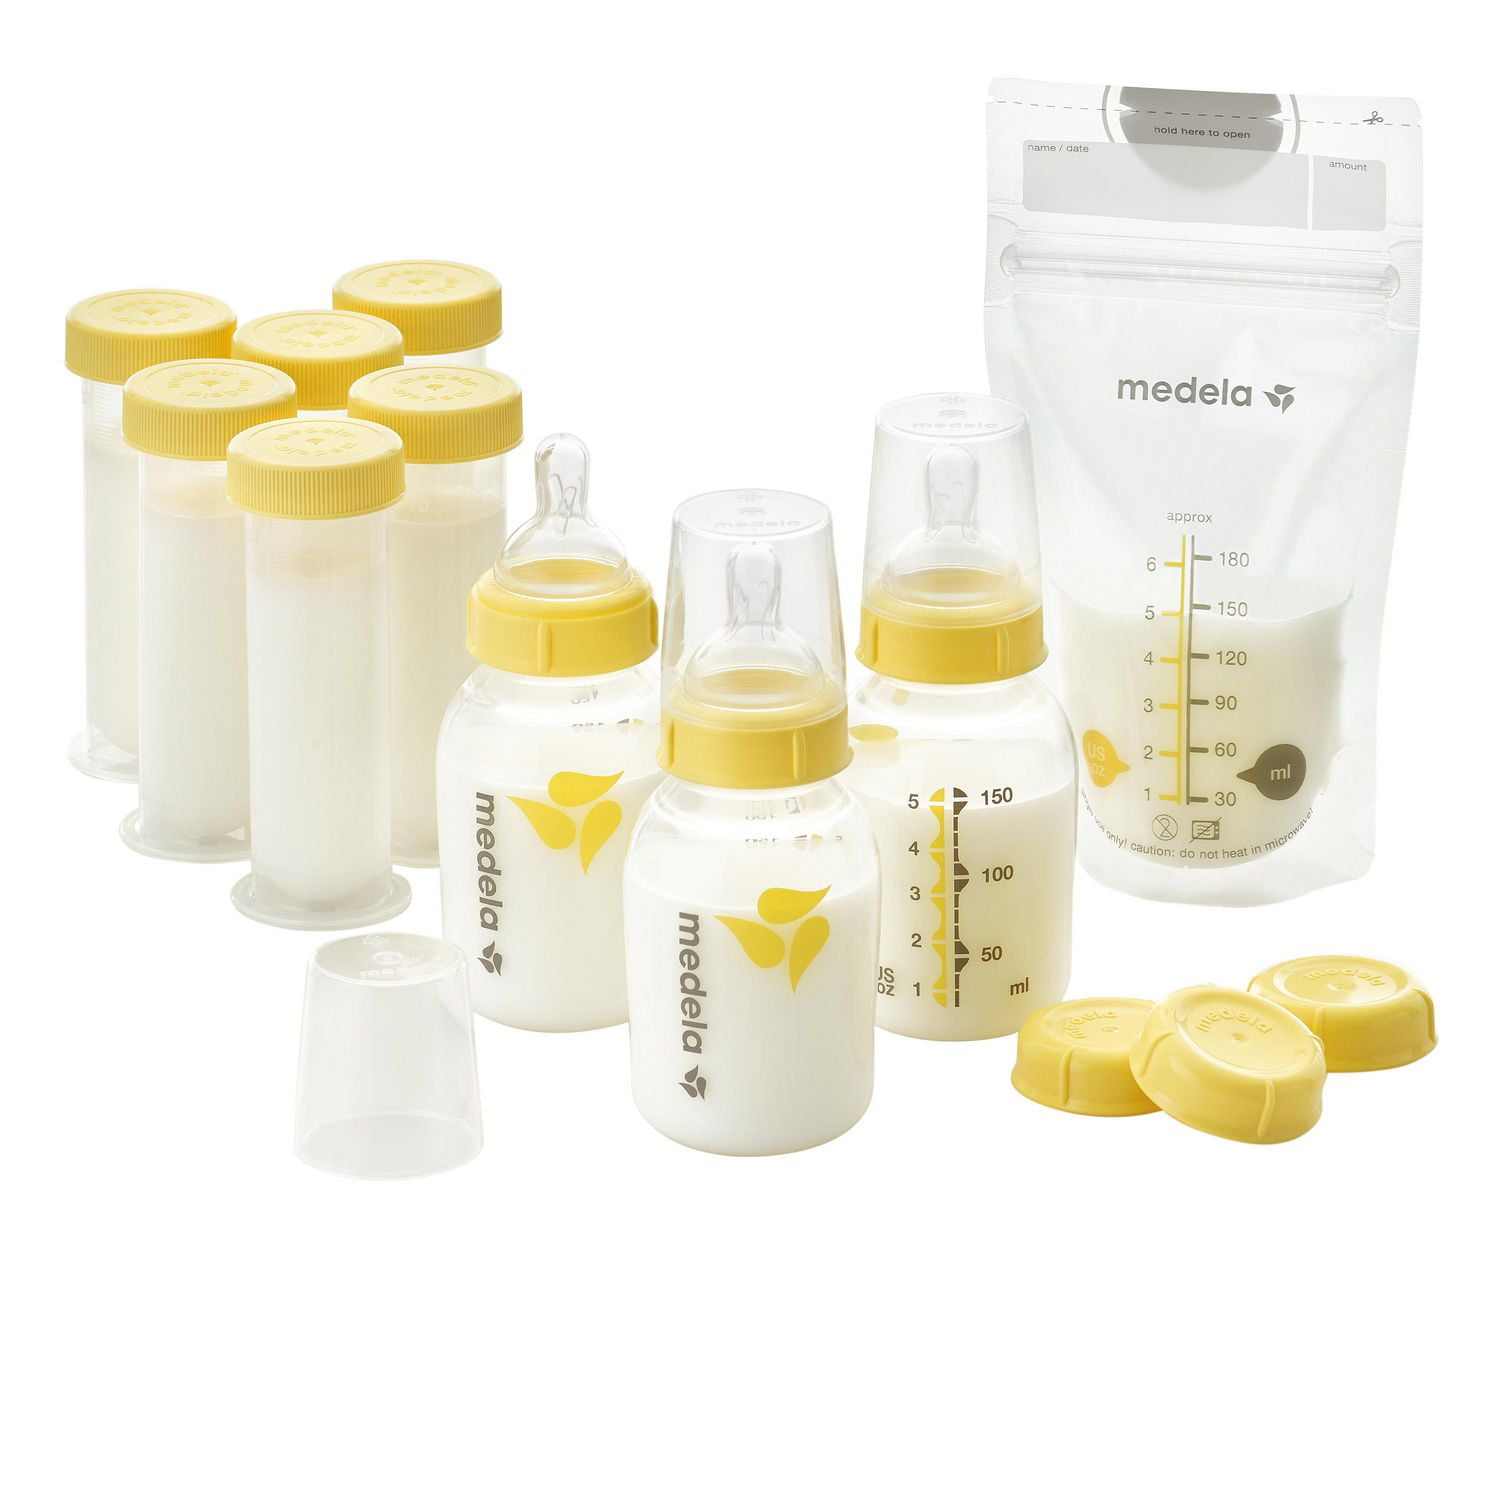 Medela Breastfeeding Gift Set, Breast Milk Storage, Storage